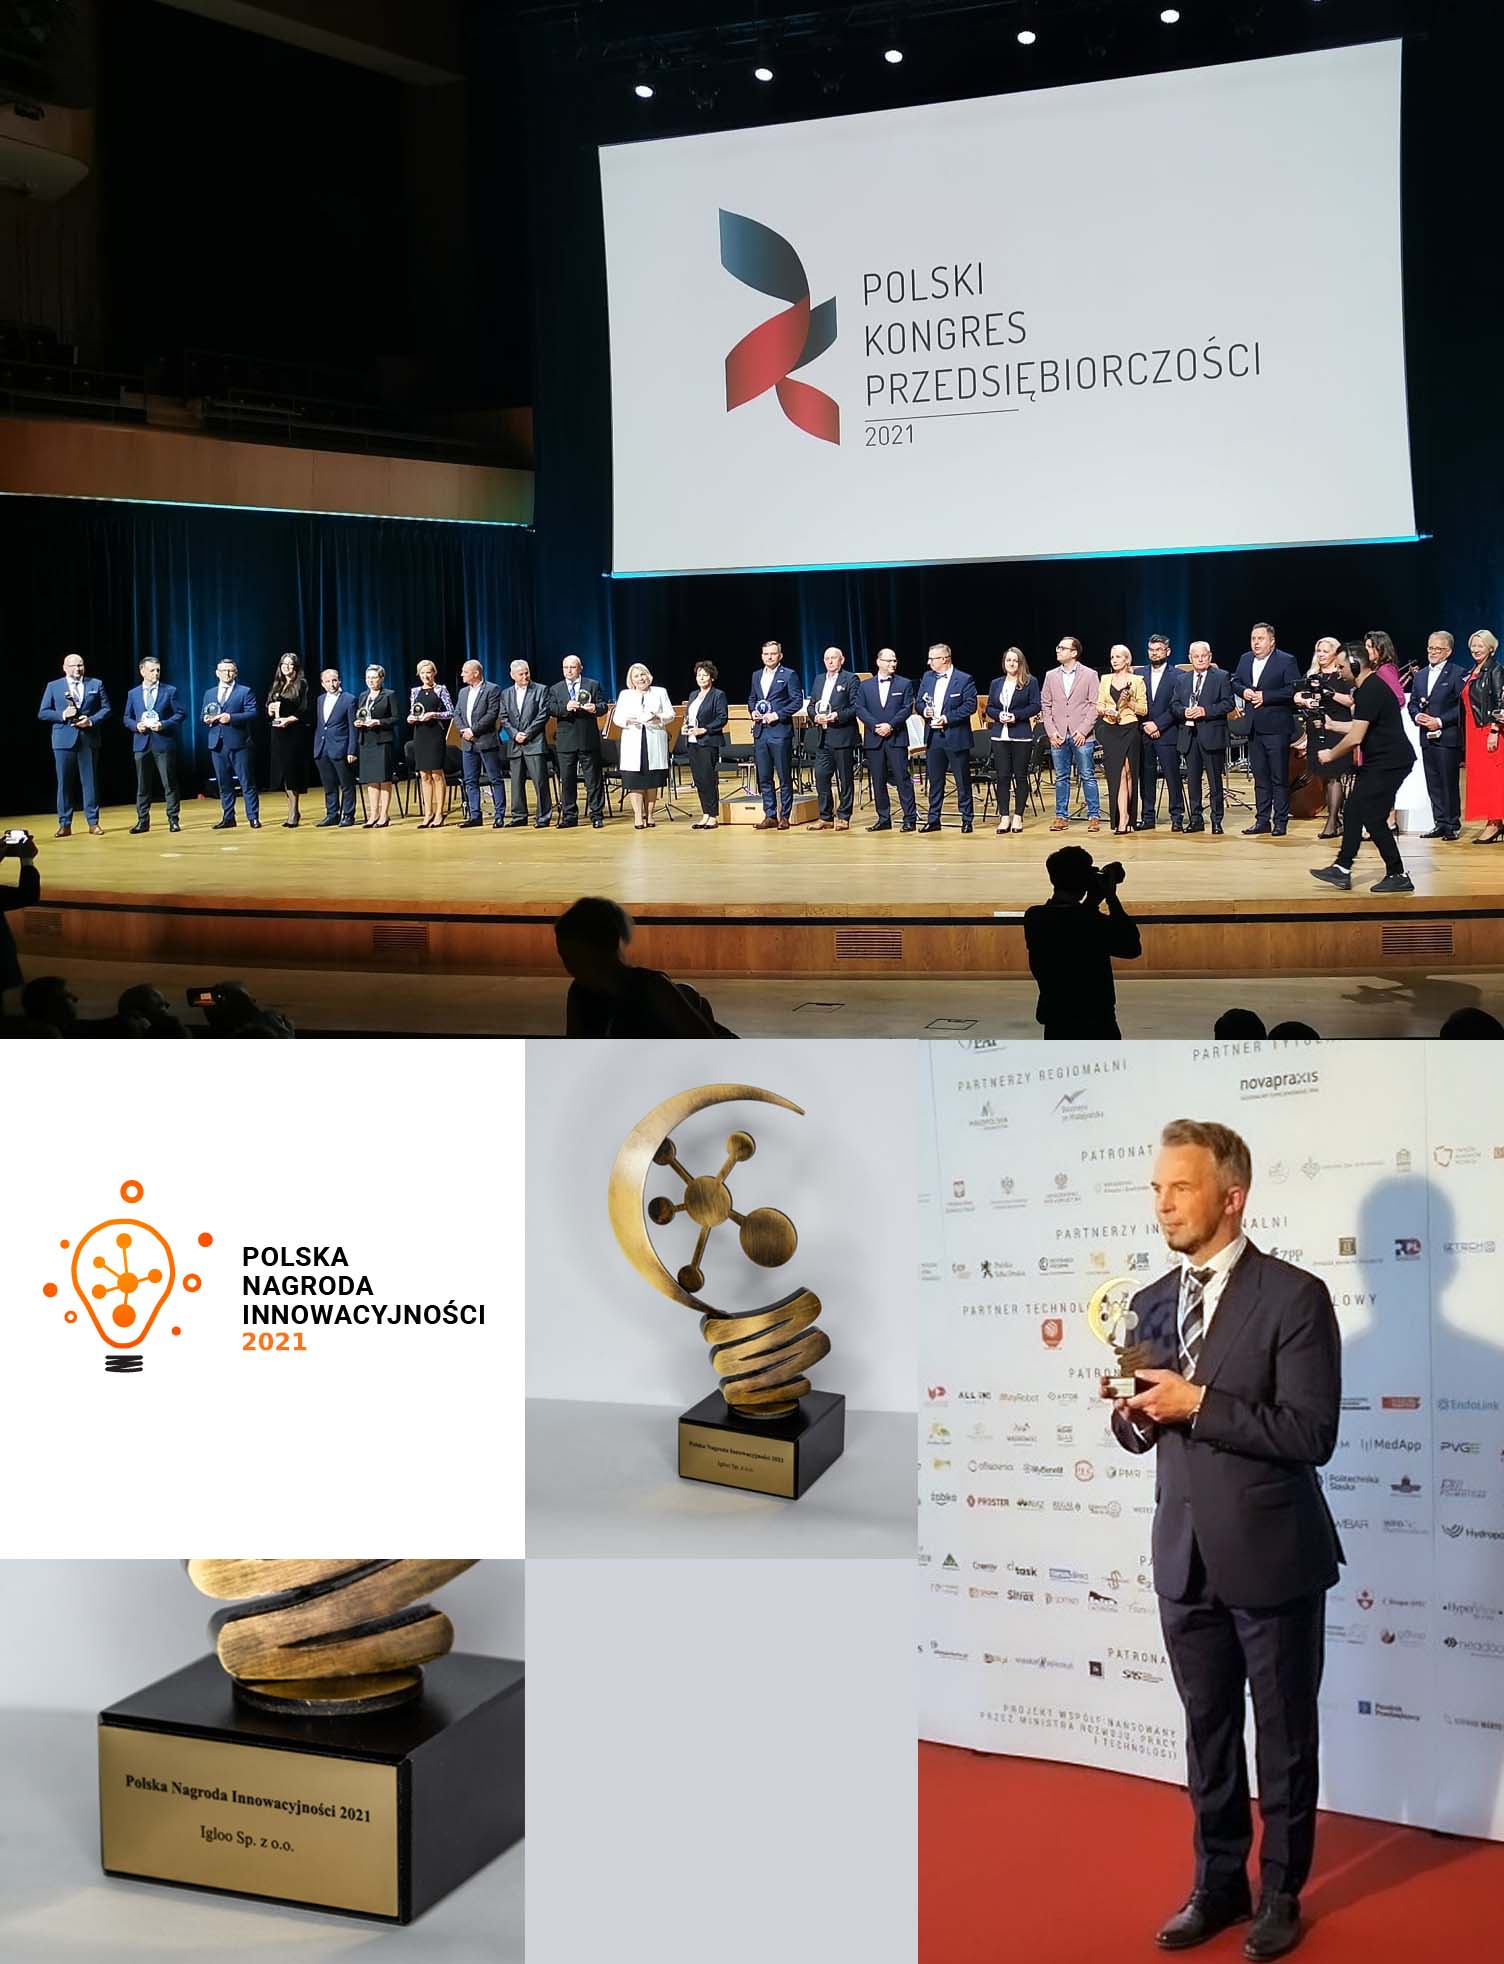 Мы рады сообщить, что IGLOO был удостоен награды Polish Innovation Award 2021 !!!